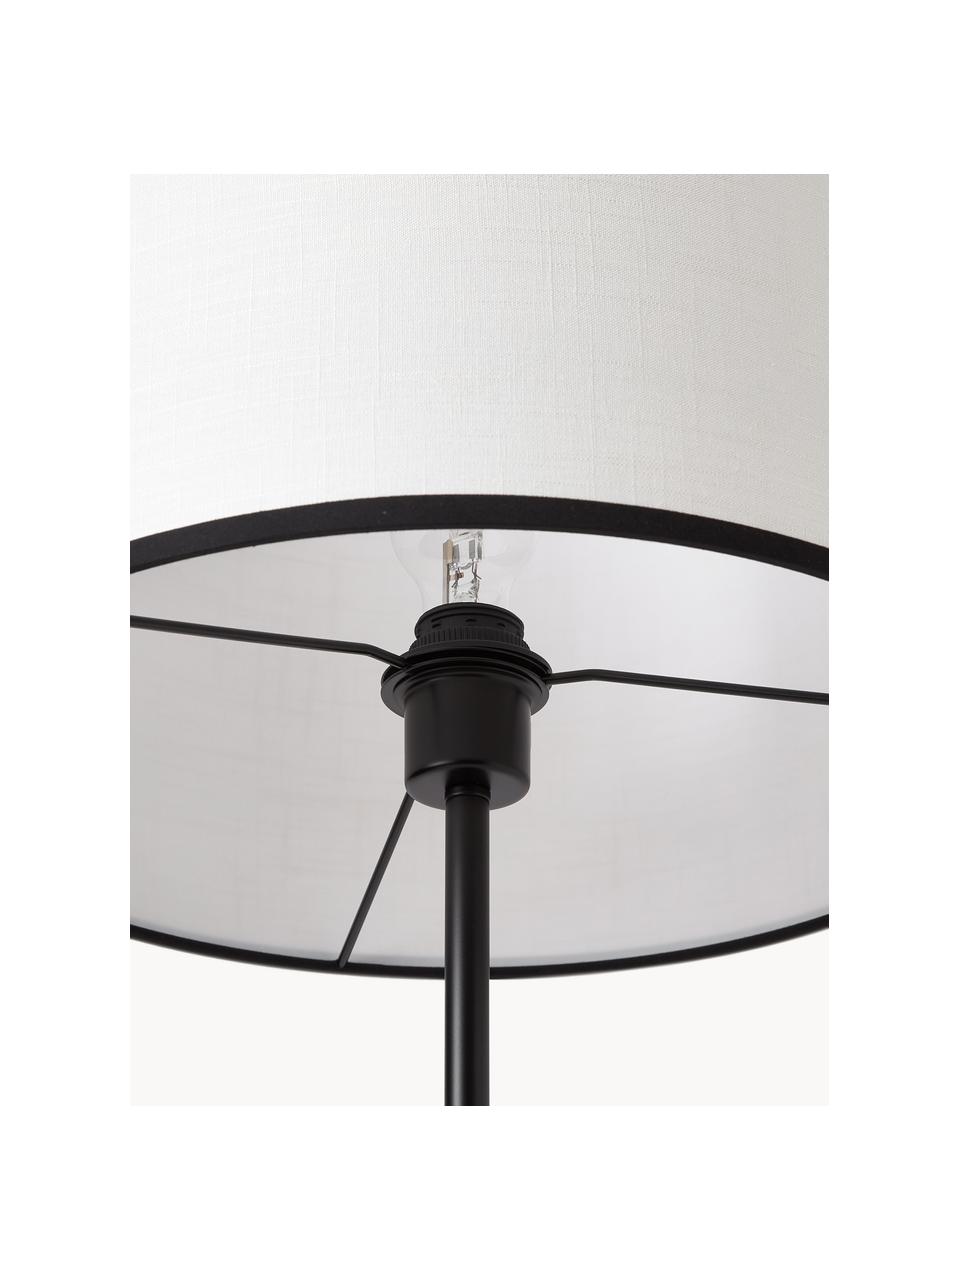 Vloerlamp Claudette met linnen lampenkap, Lampenkap: linnen,gestructureerd, Lampvoet: gepoedercoat metaal, Wit, zwart, H 165 cm